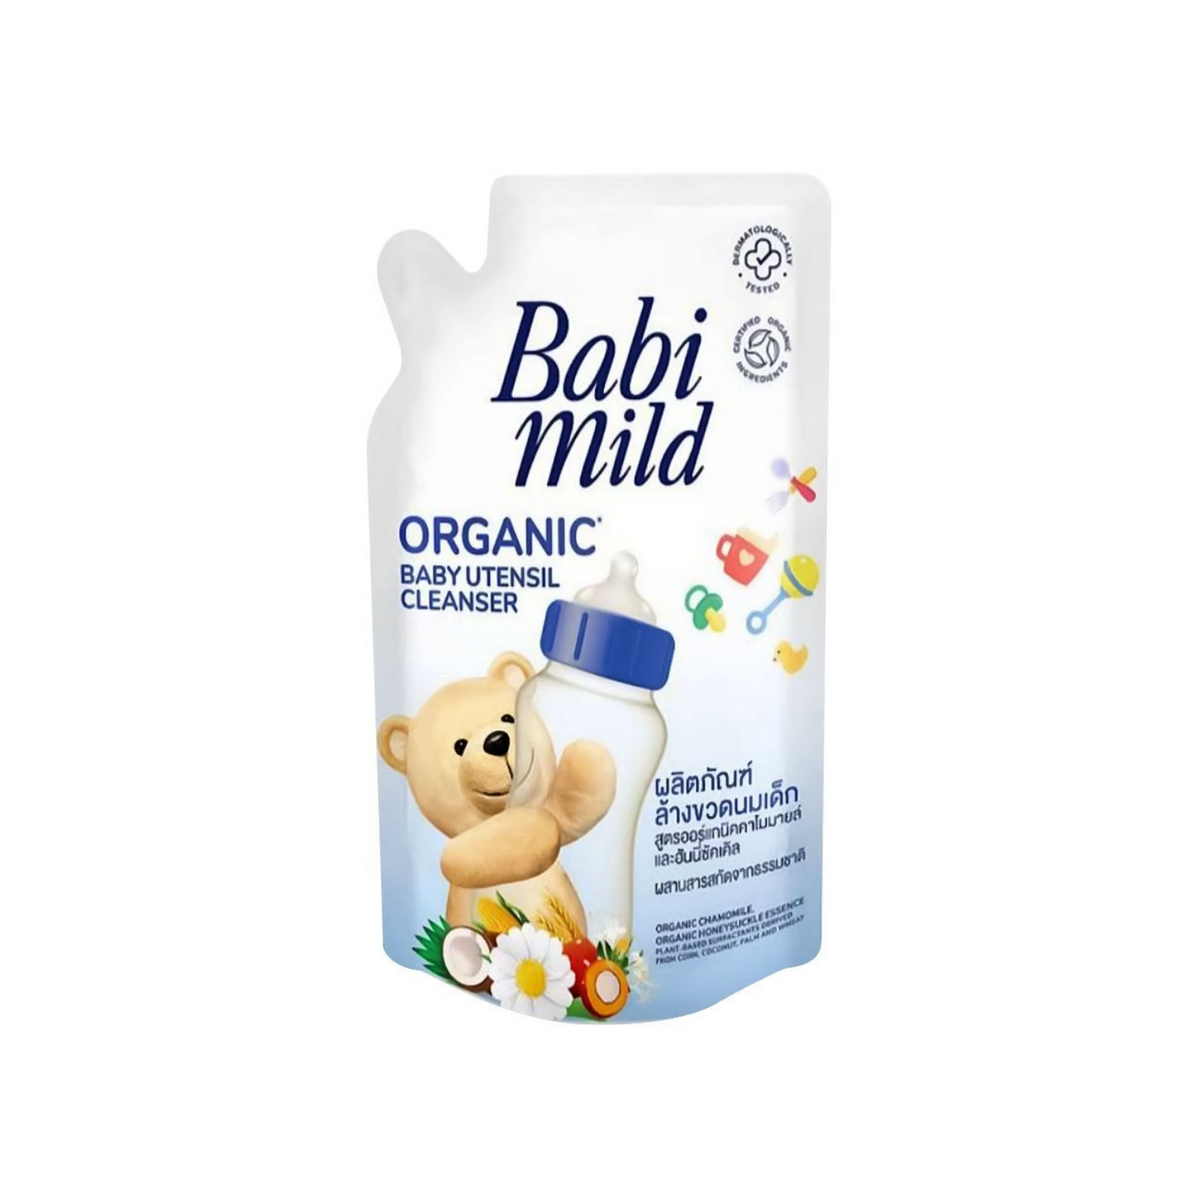 babi-mild-organic-baby-utensil-cleanser-600ml